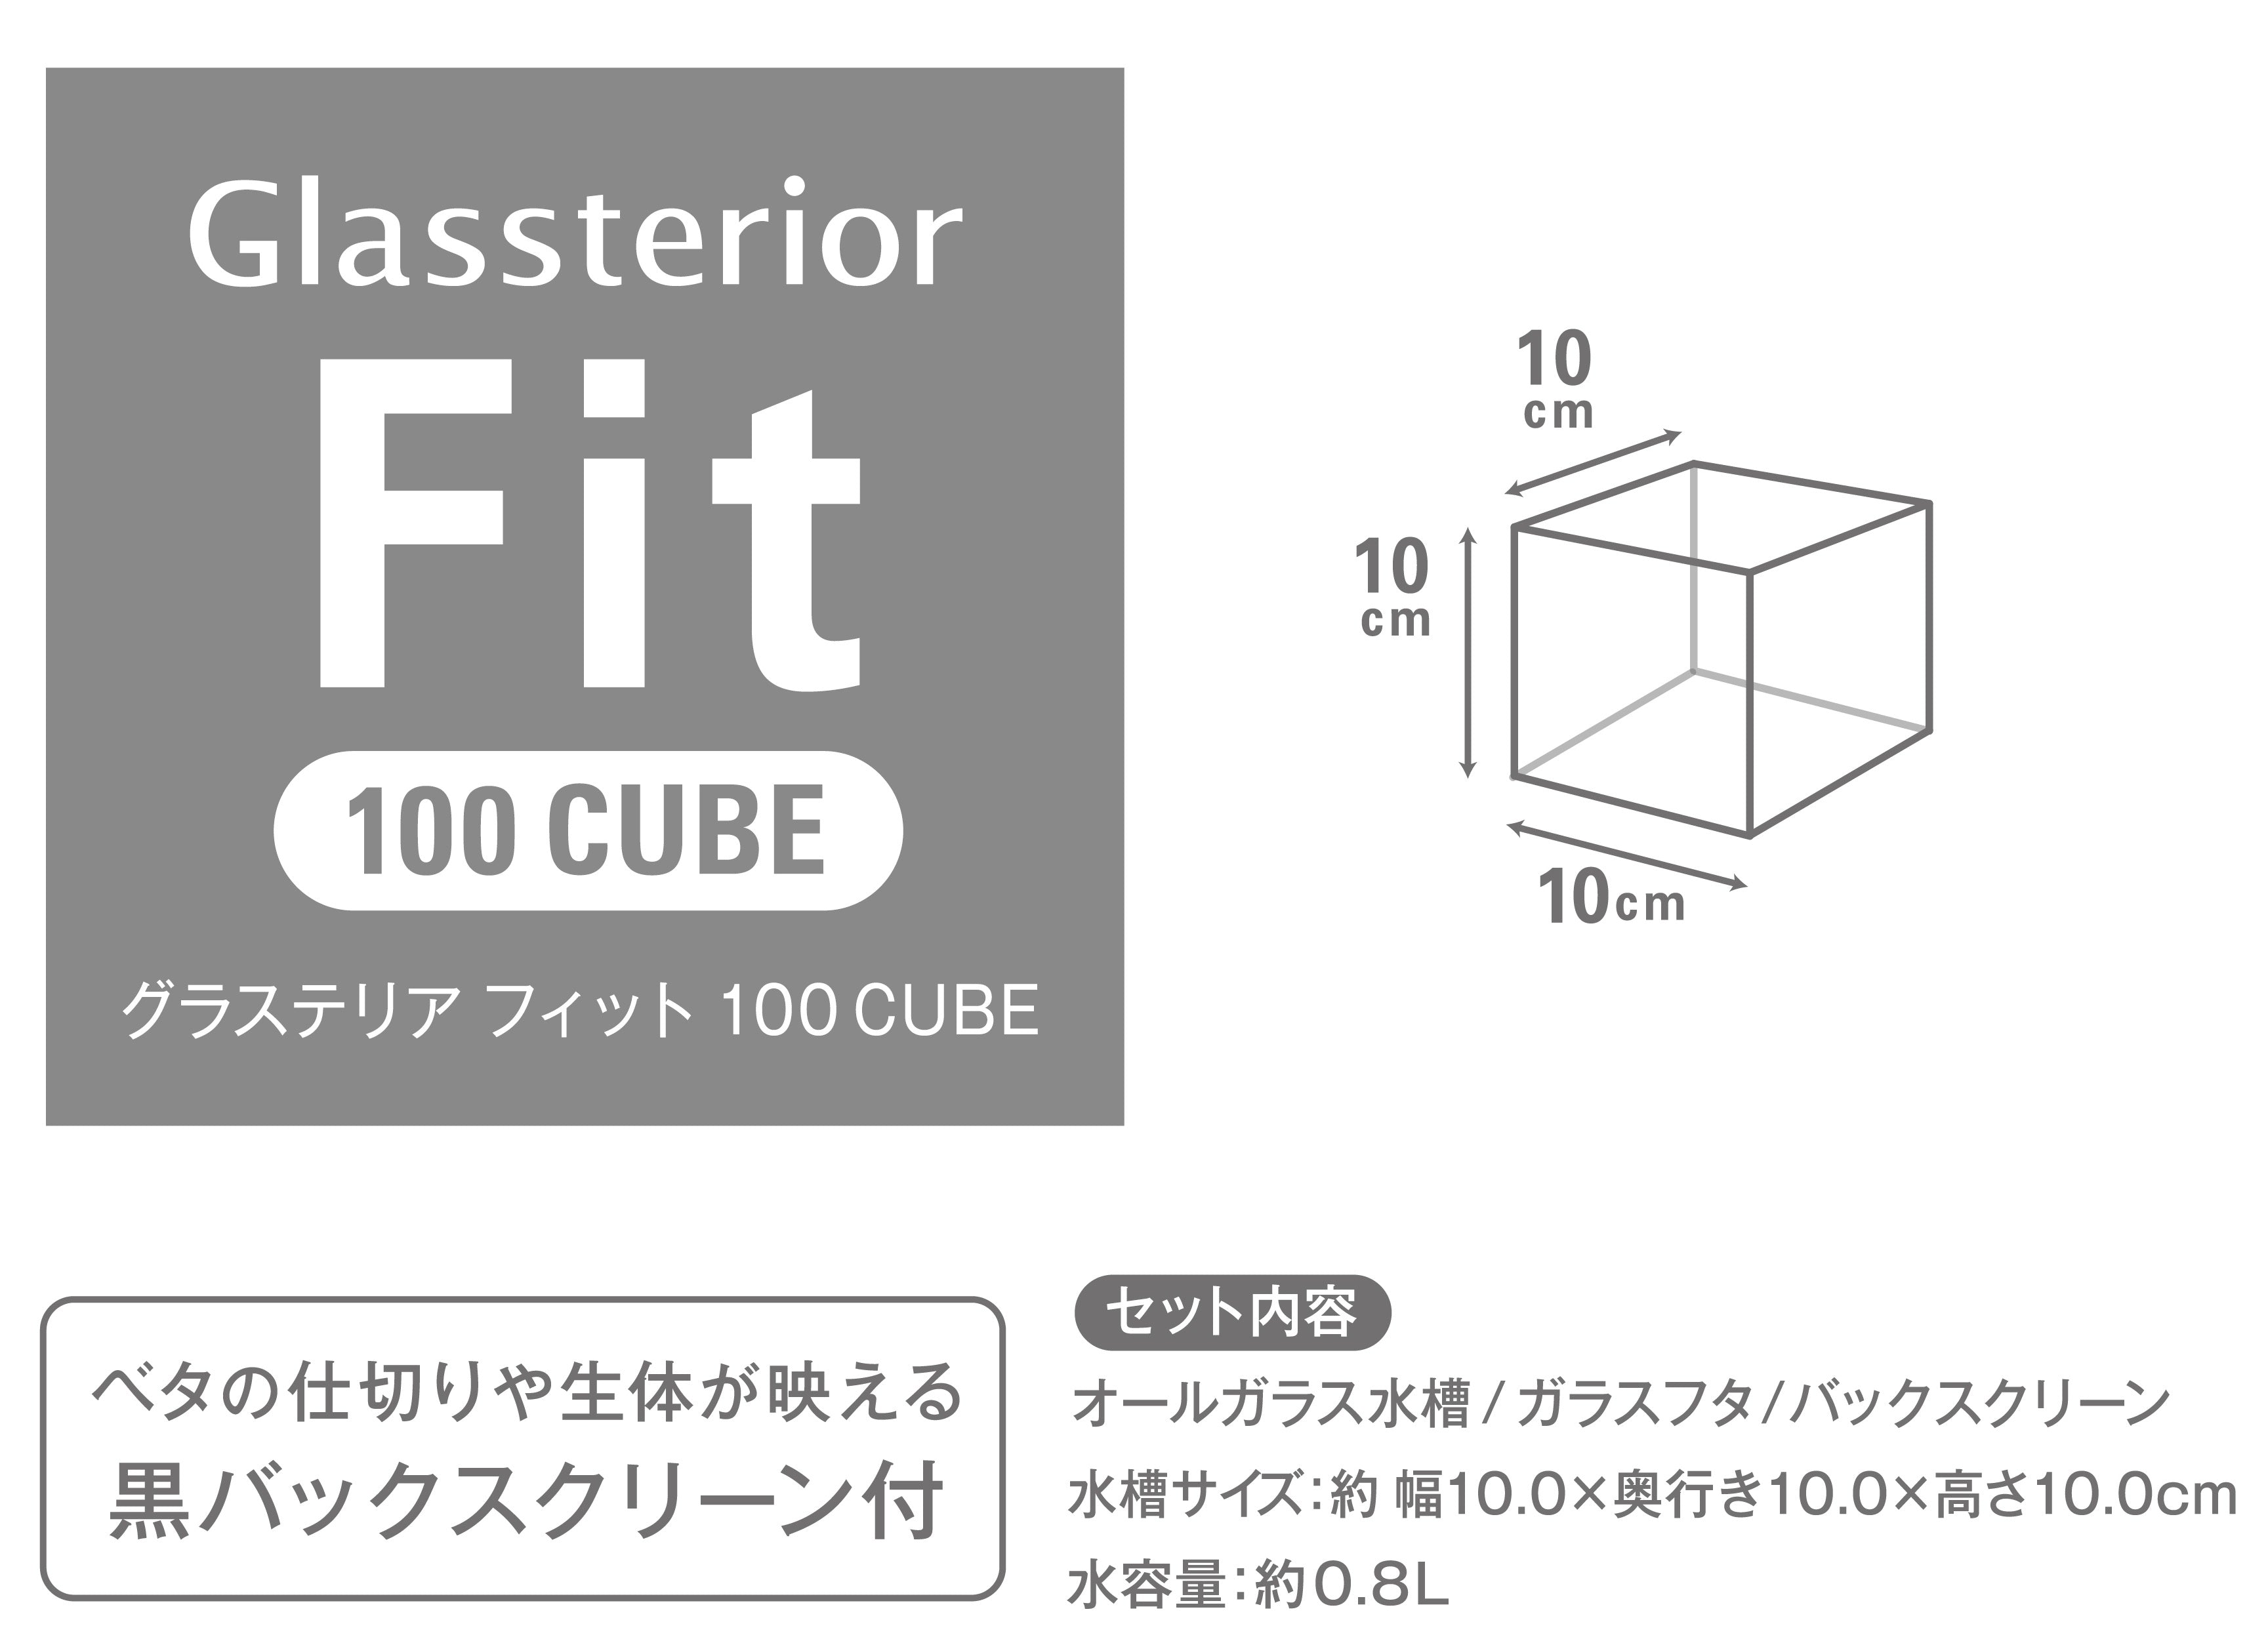 GEX Glassterior Fit 100 CUBE Fish Tank (10X10X10cm) #8624